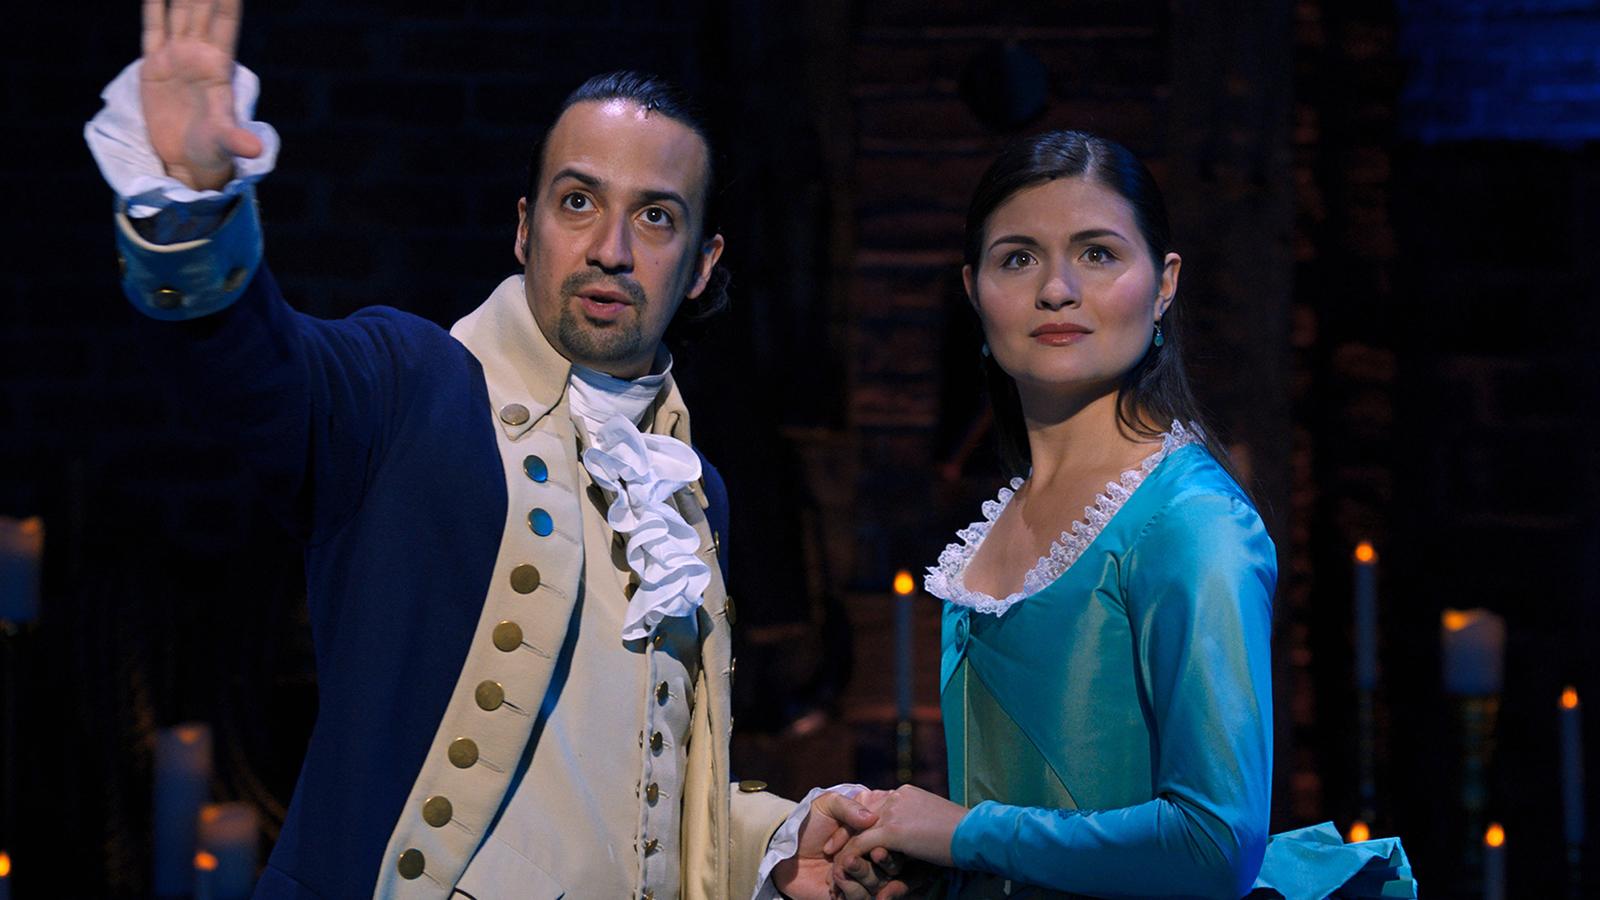 Lin-Manuel Miranda appears as Hamilton alongside Phillipa Soo as Eliza.